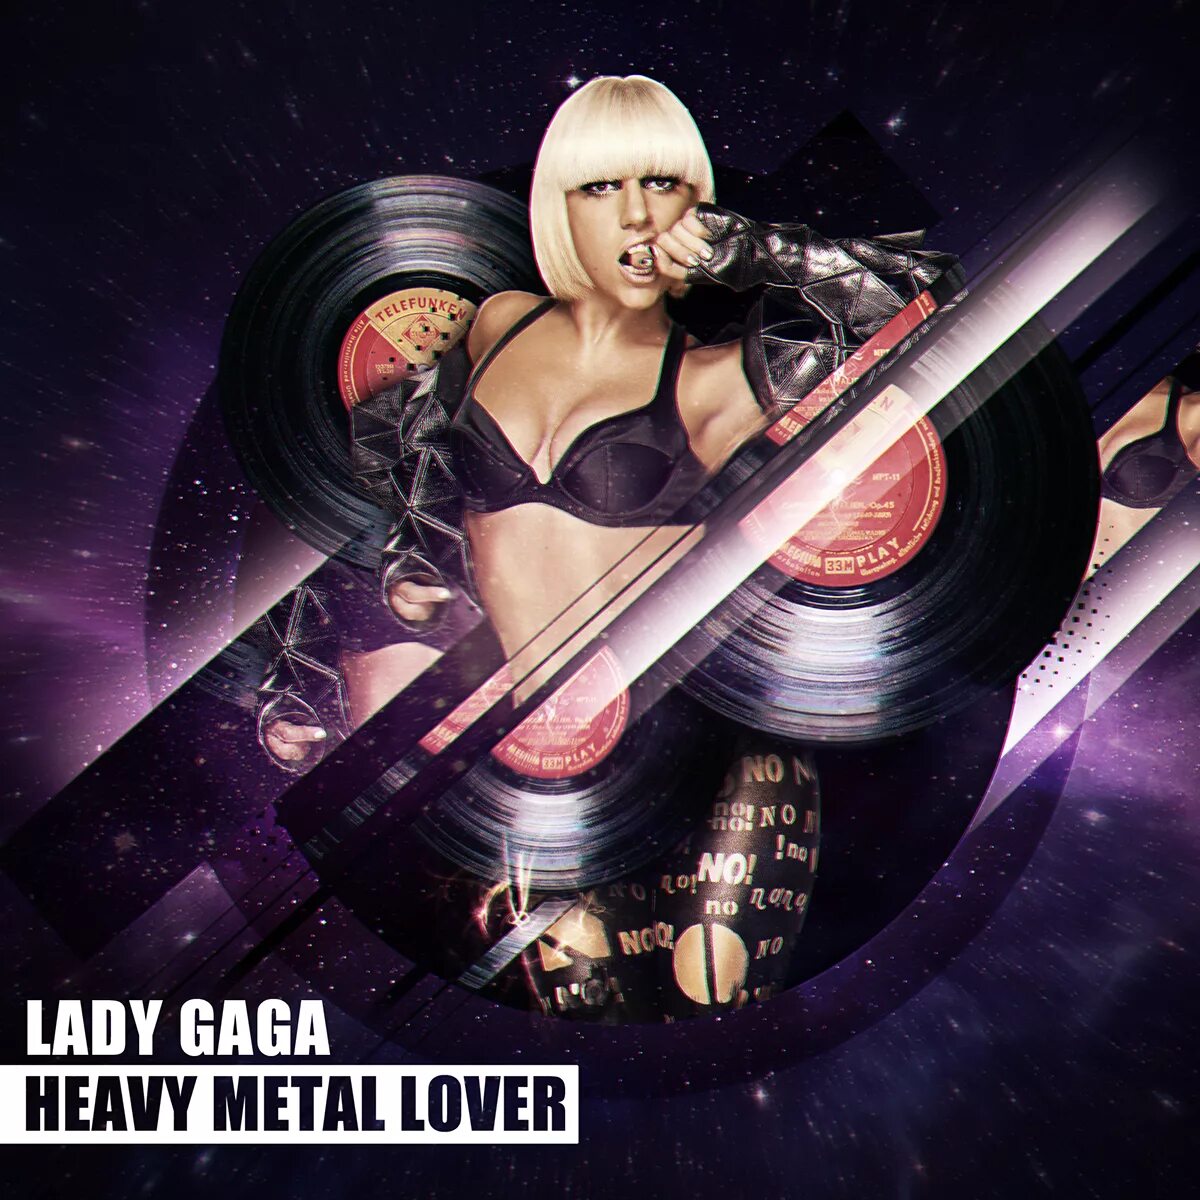 Хеви хеви леди. Lady Gaga Heavy Metal. Metal Lady. Heavy Metal lover леди Гага. Metal lover перевод